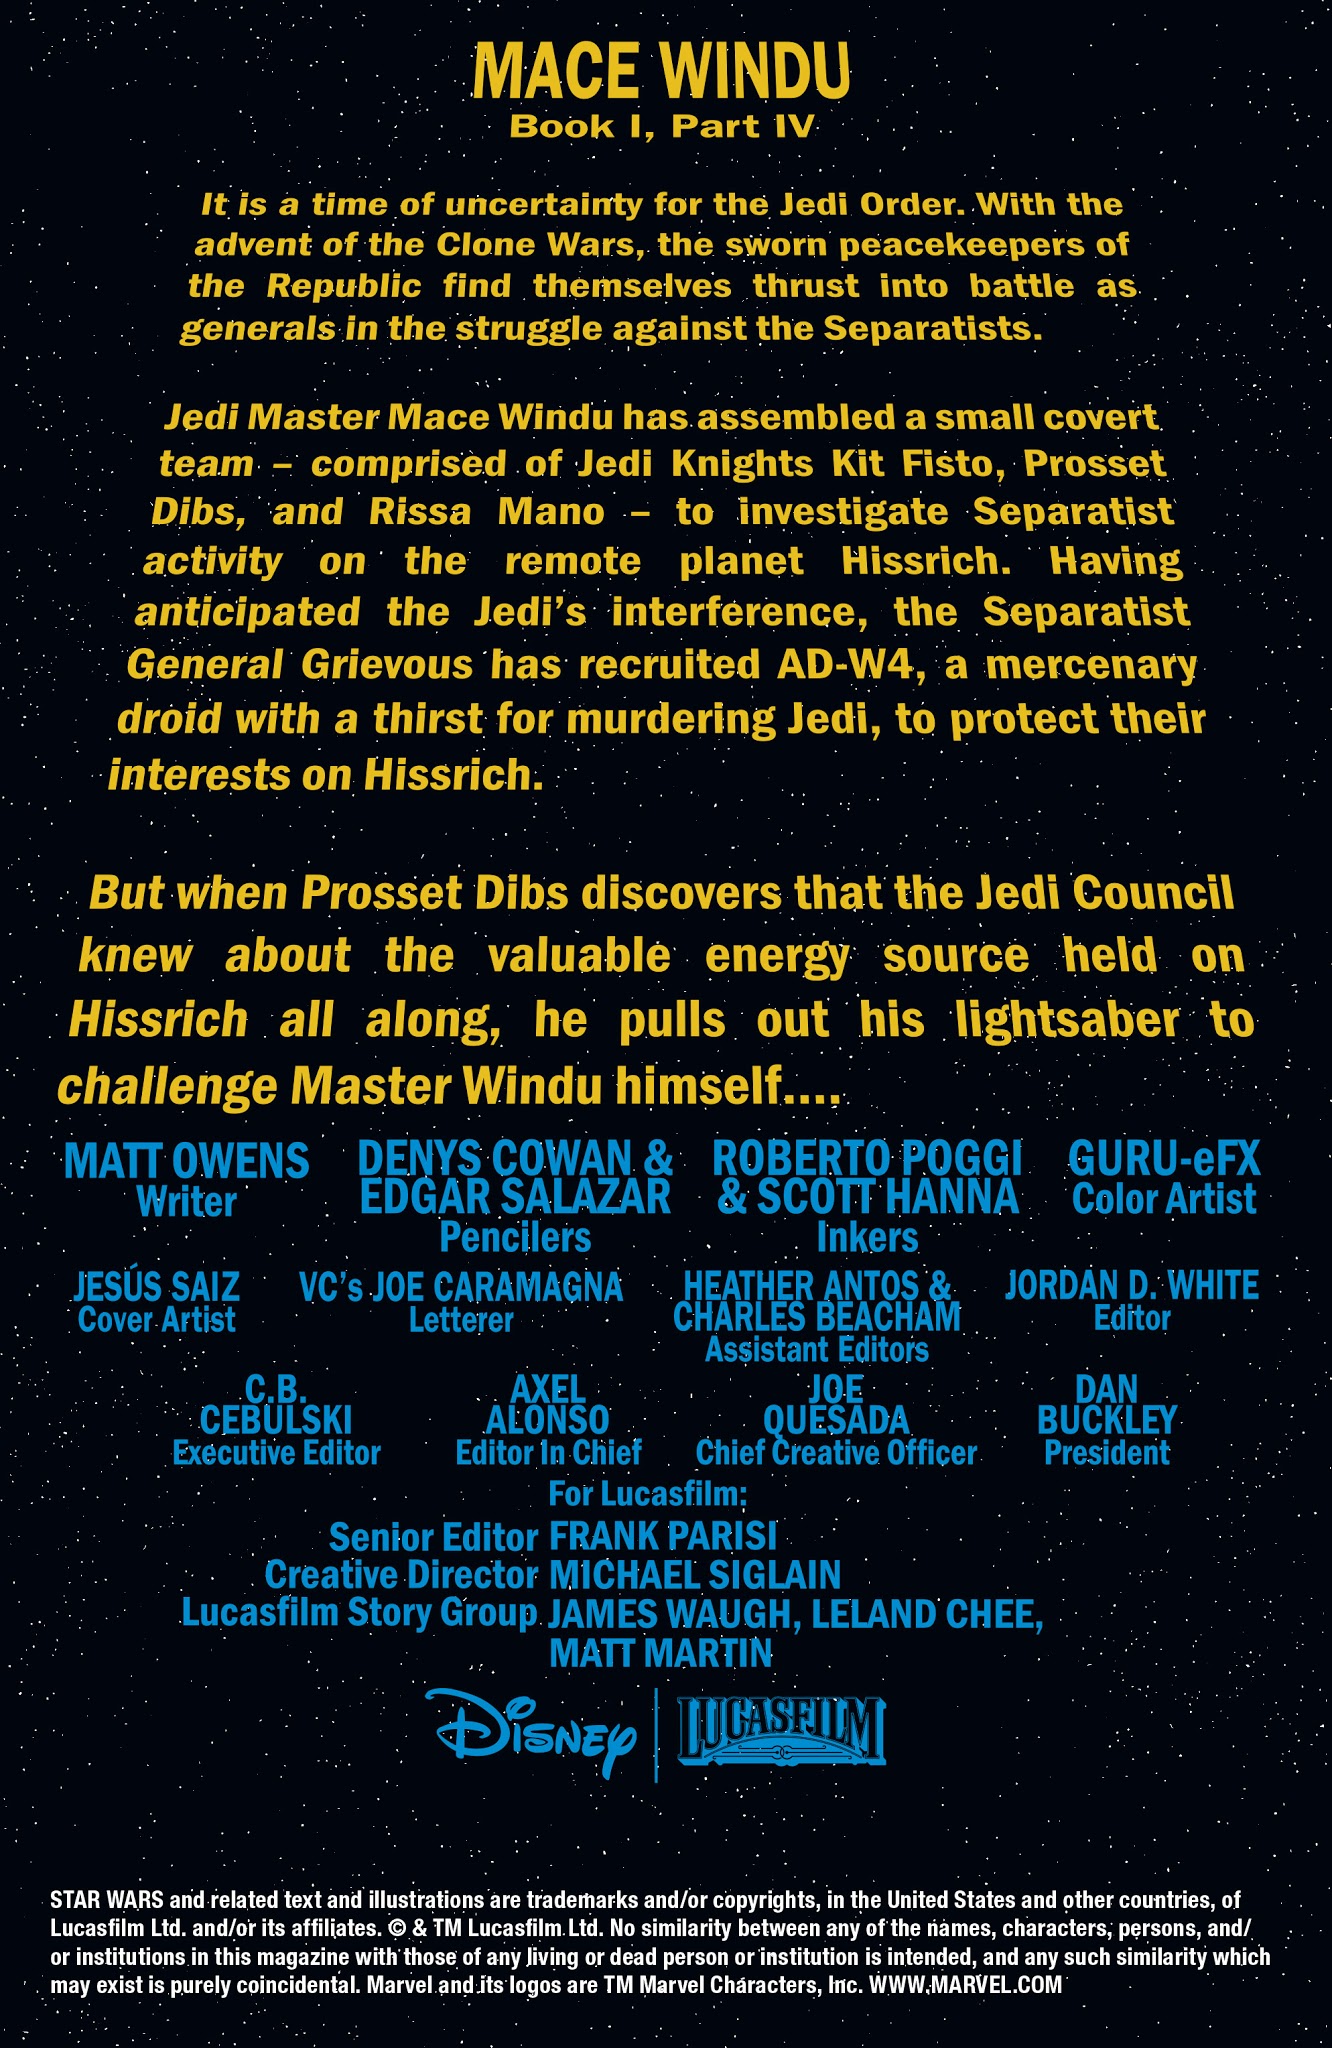 Read online Star Wars: Mace Windu comic -  Issue #4 - 2